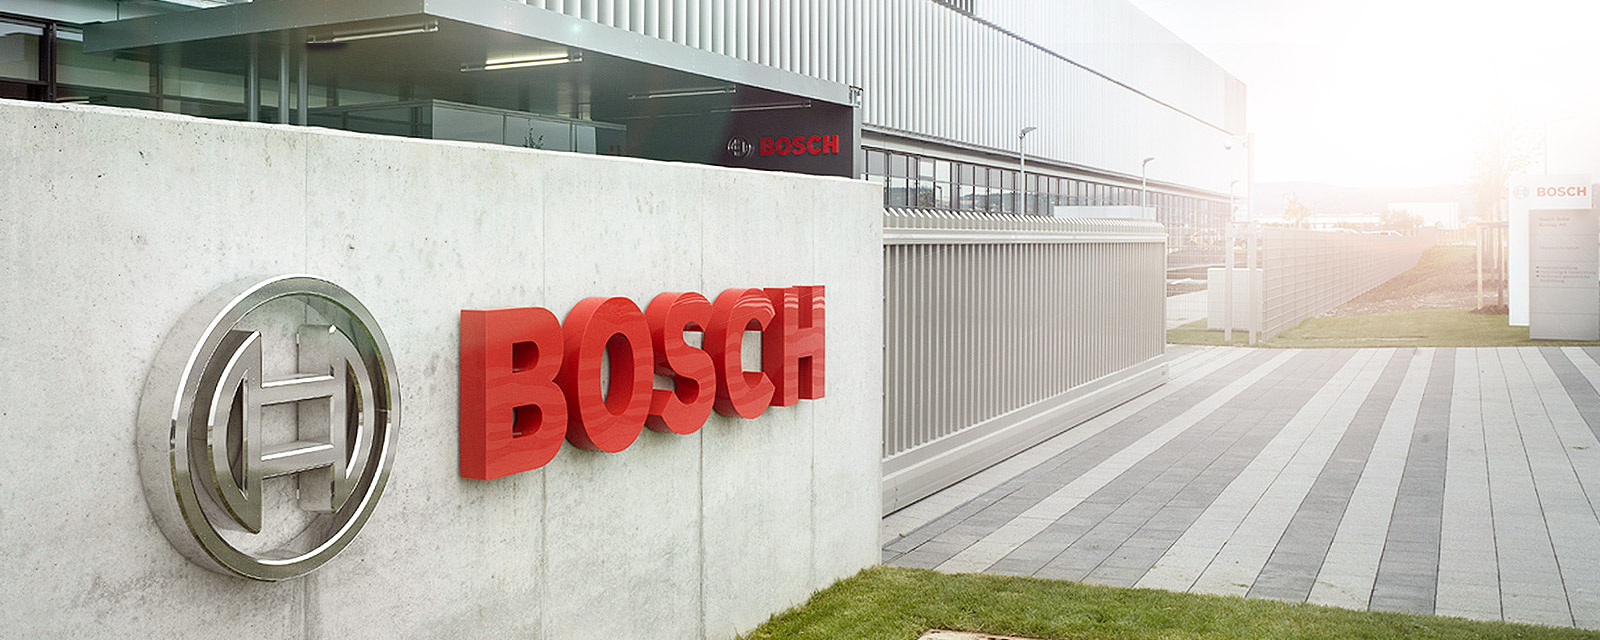 شرکت بوش Bosch